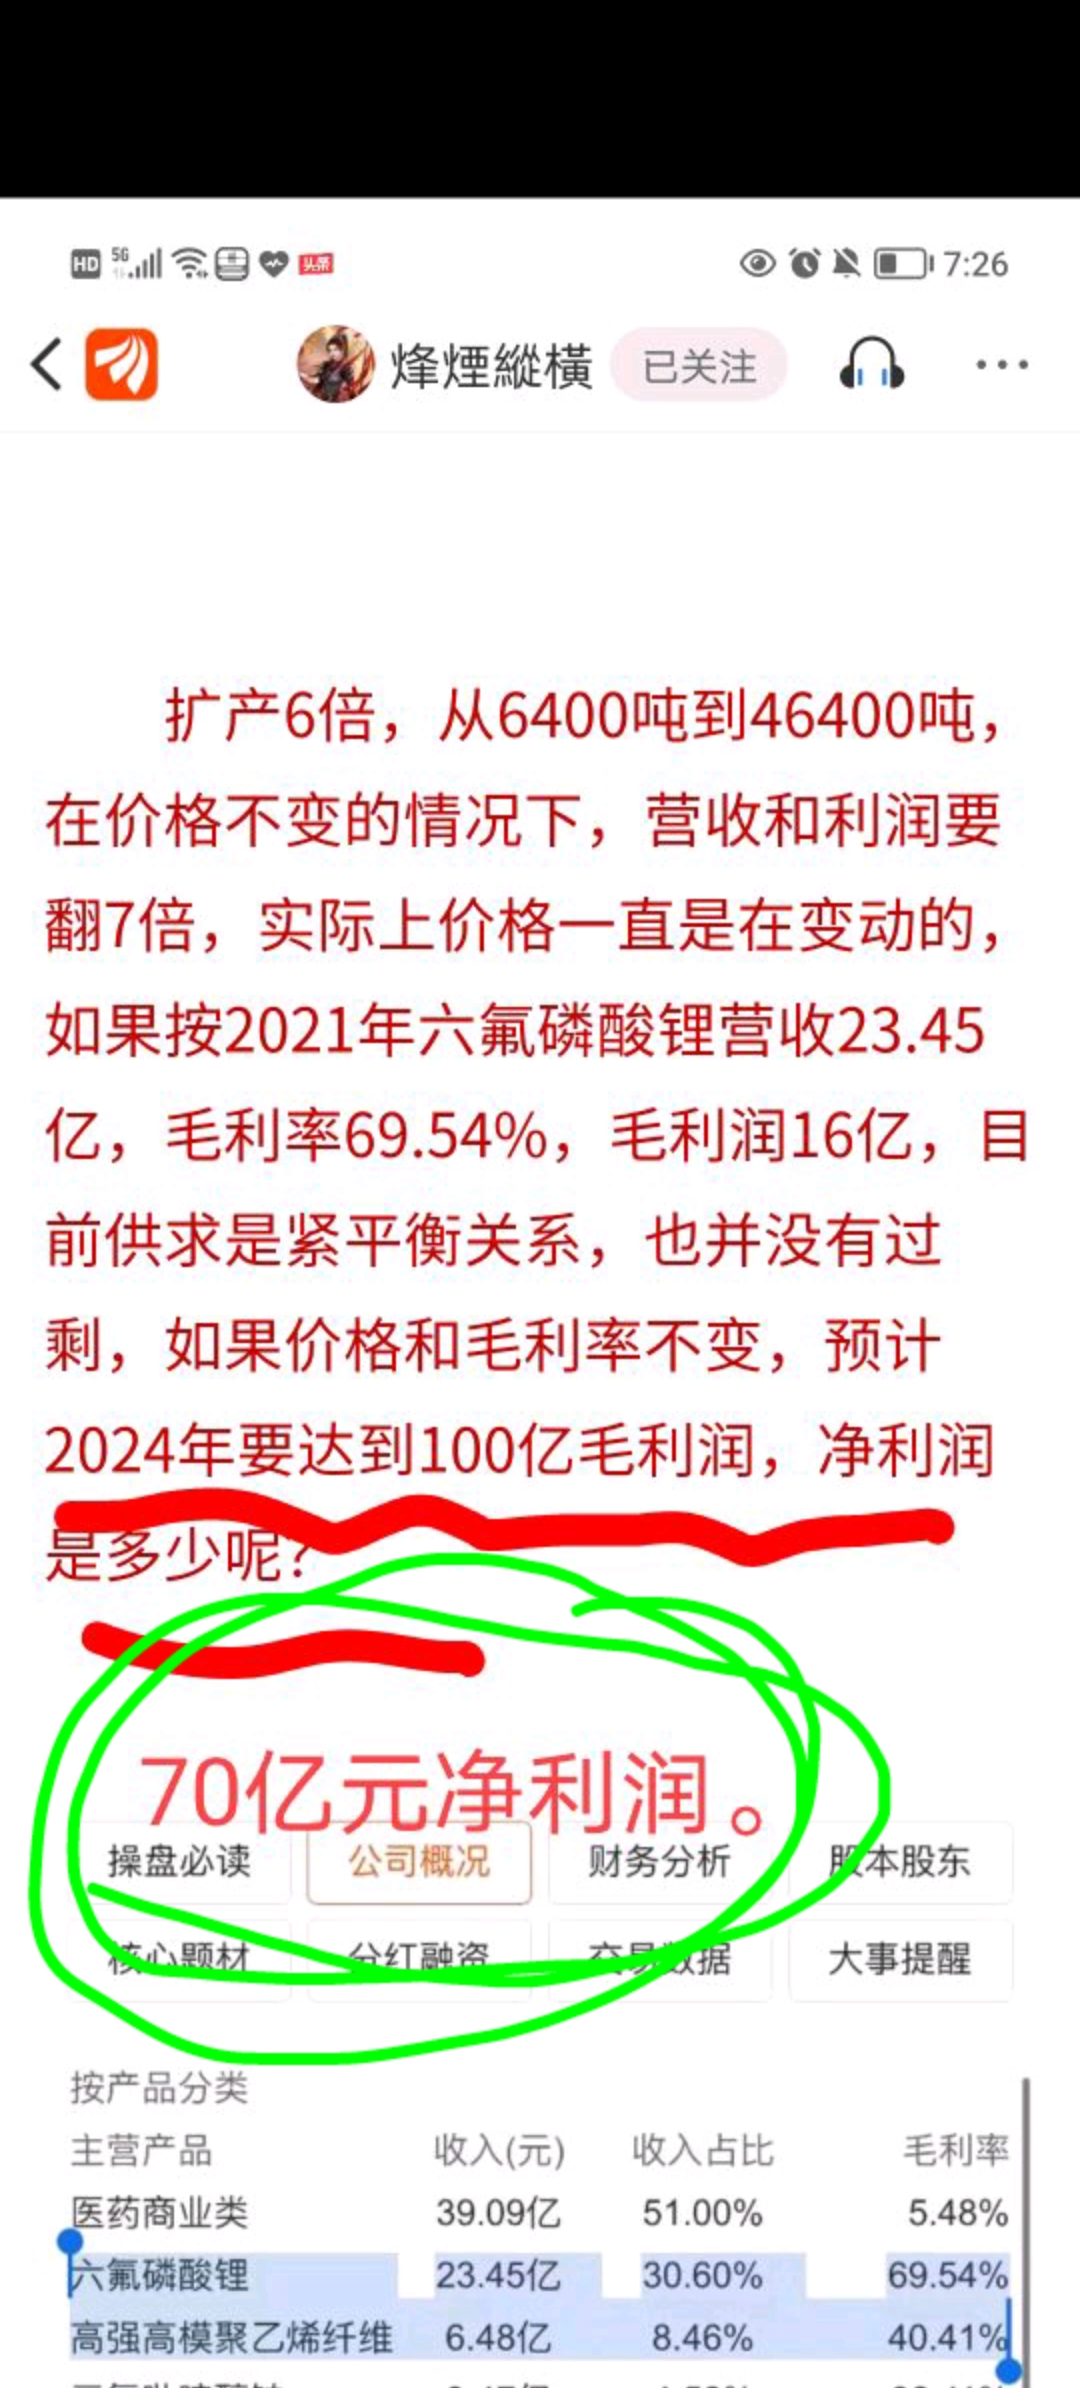 中国能源股票_远景能源员工股票_平庄能源股票